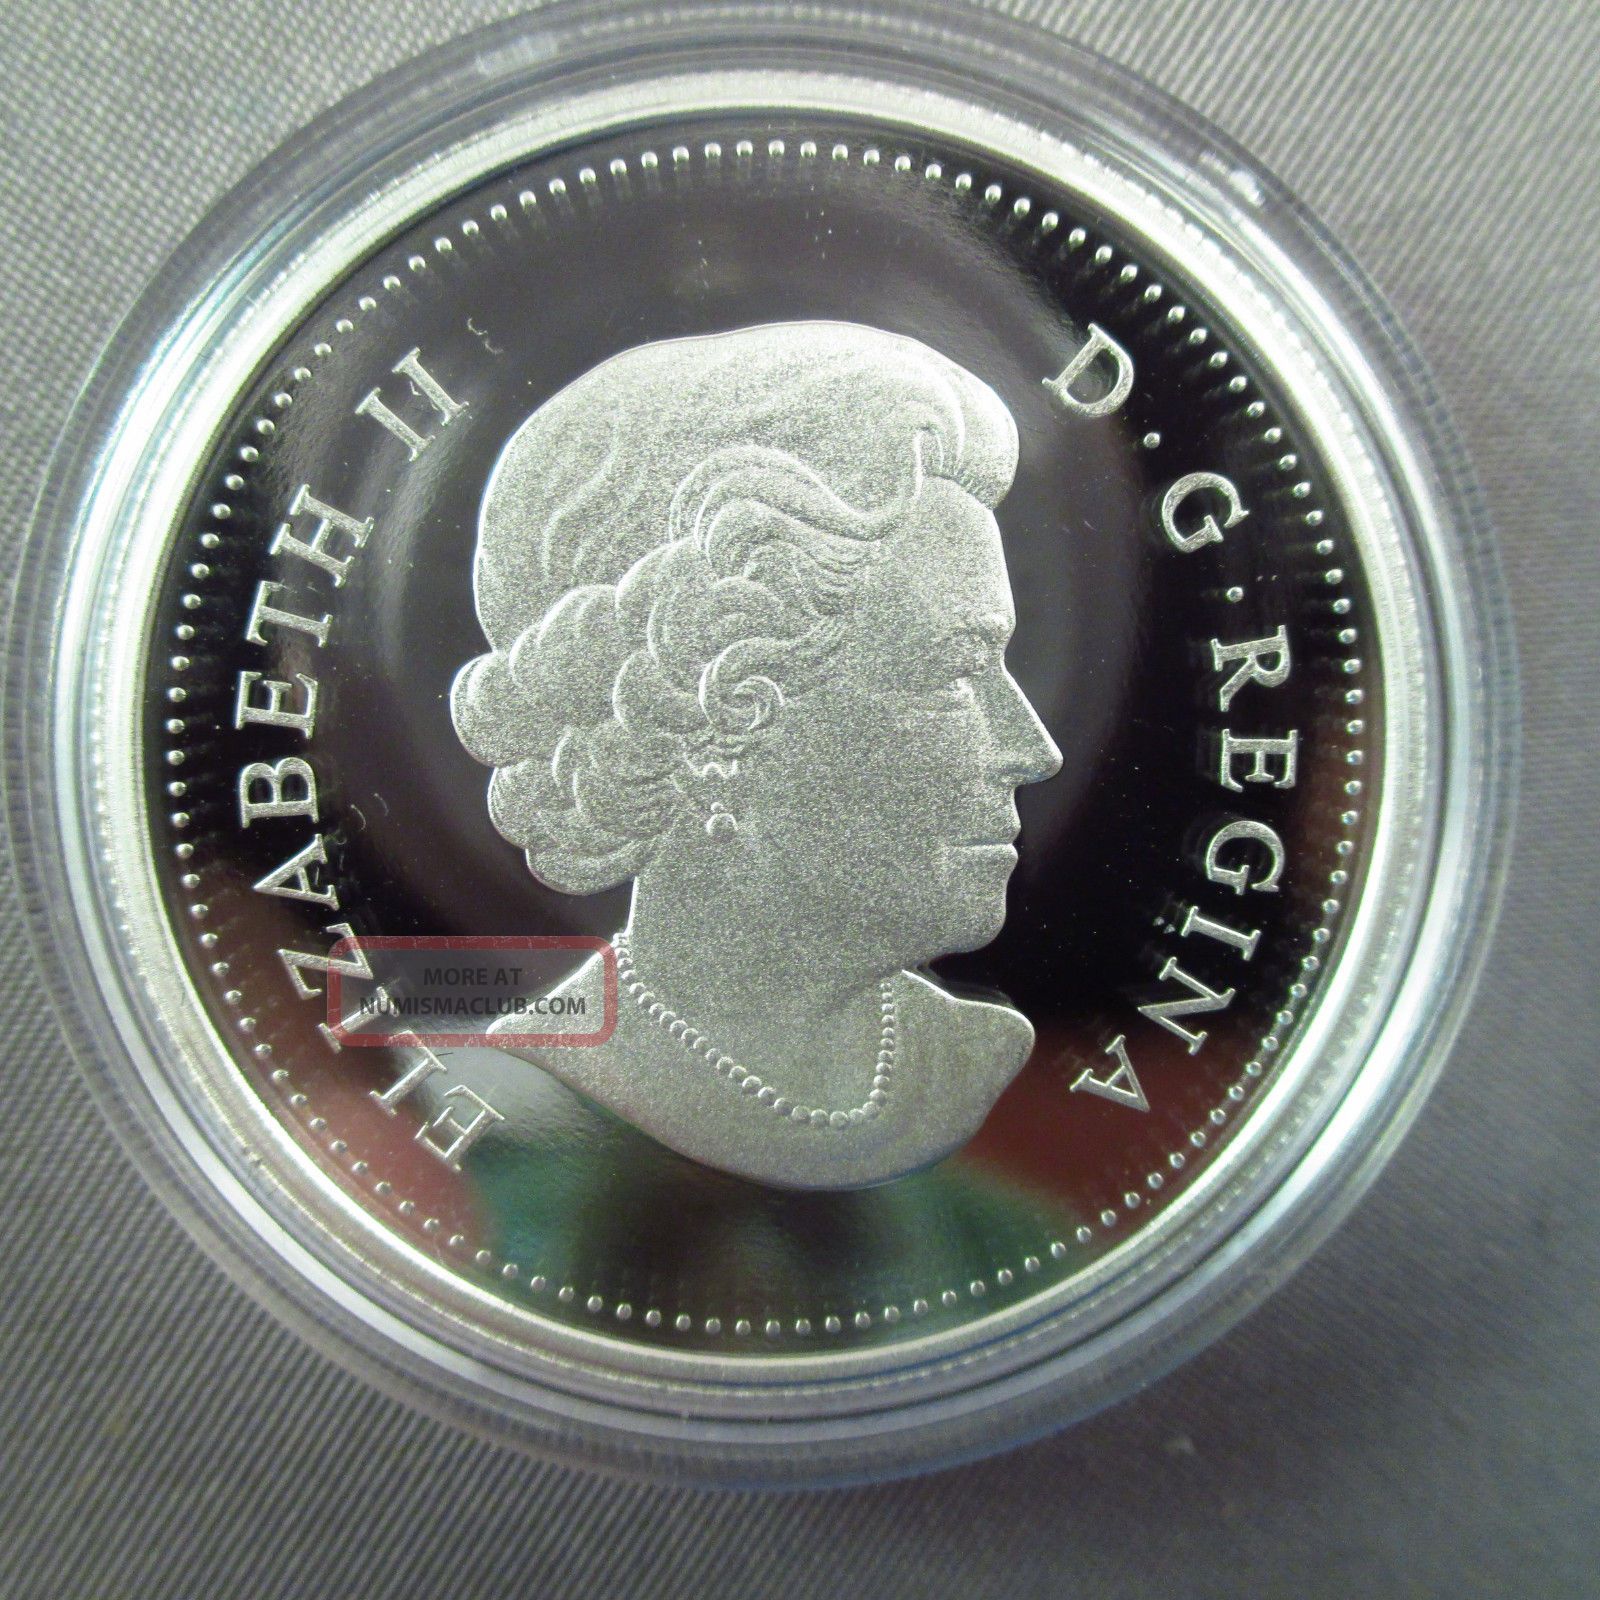 Canadian 2012 Proof Silver Dollar 3/4 Oz. 9999 Fine Silver Canada Box ...